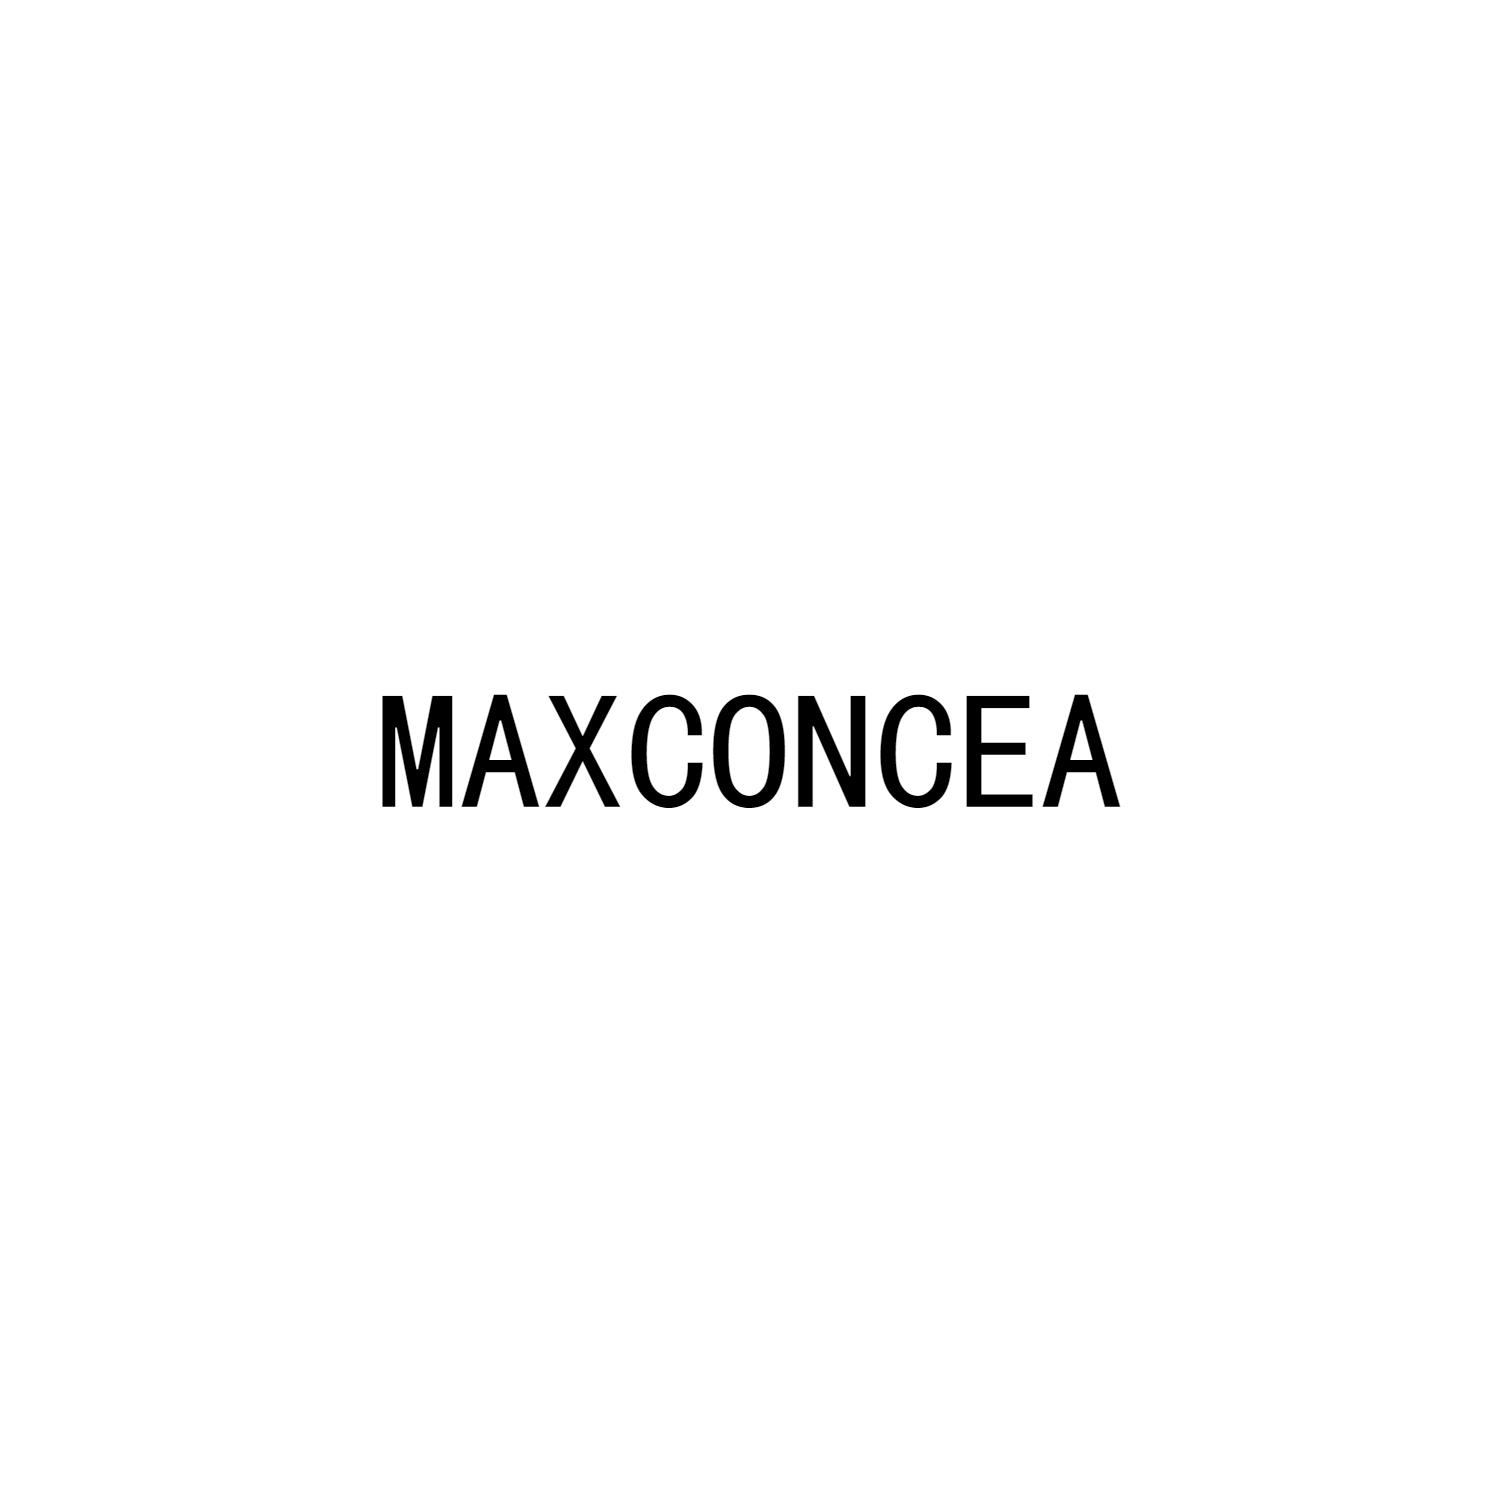 MAXCONCEA